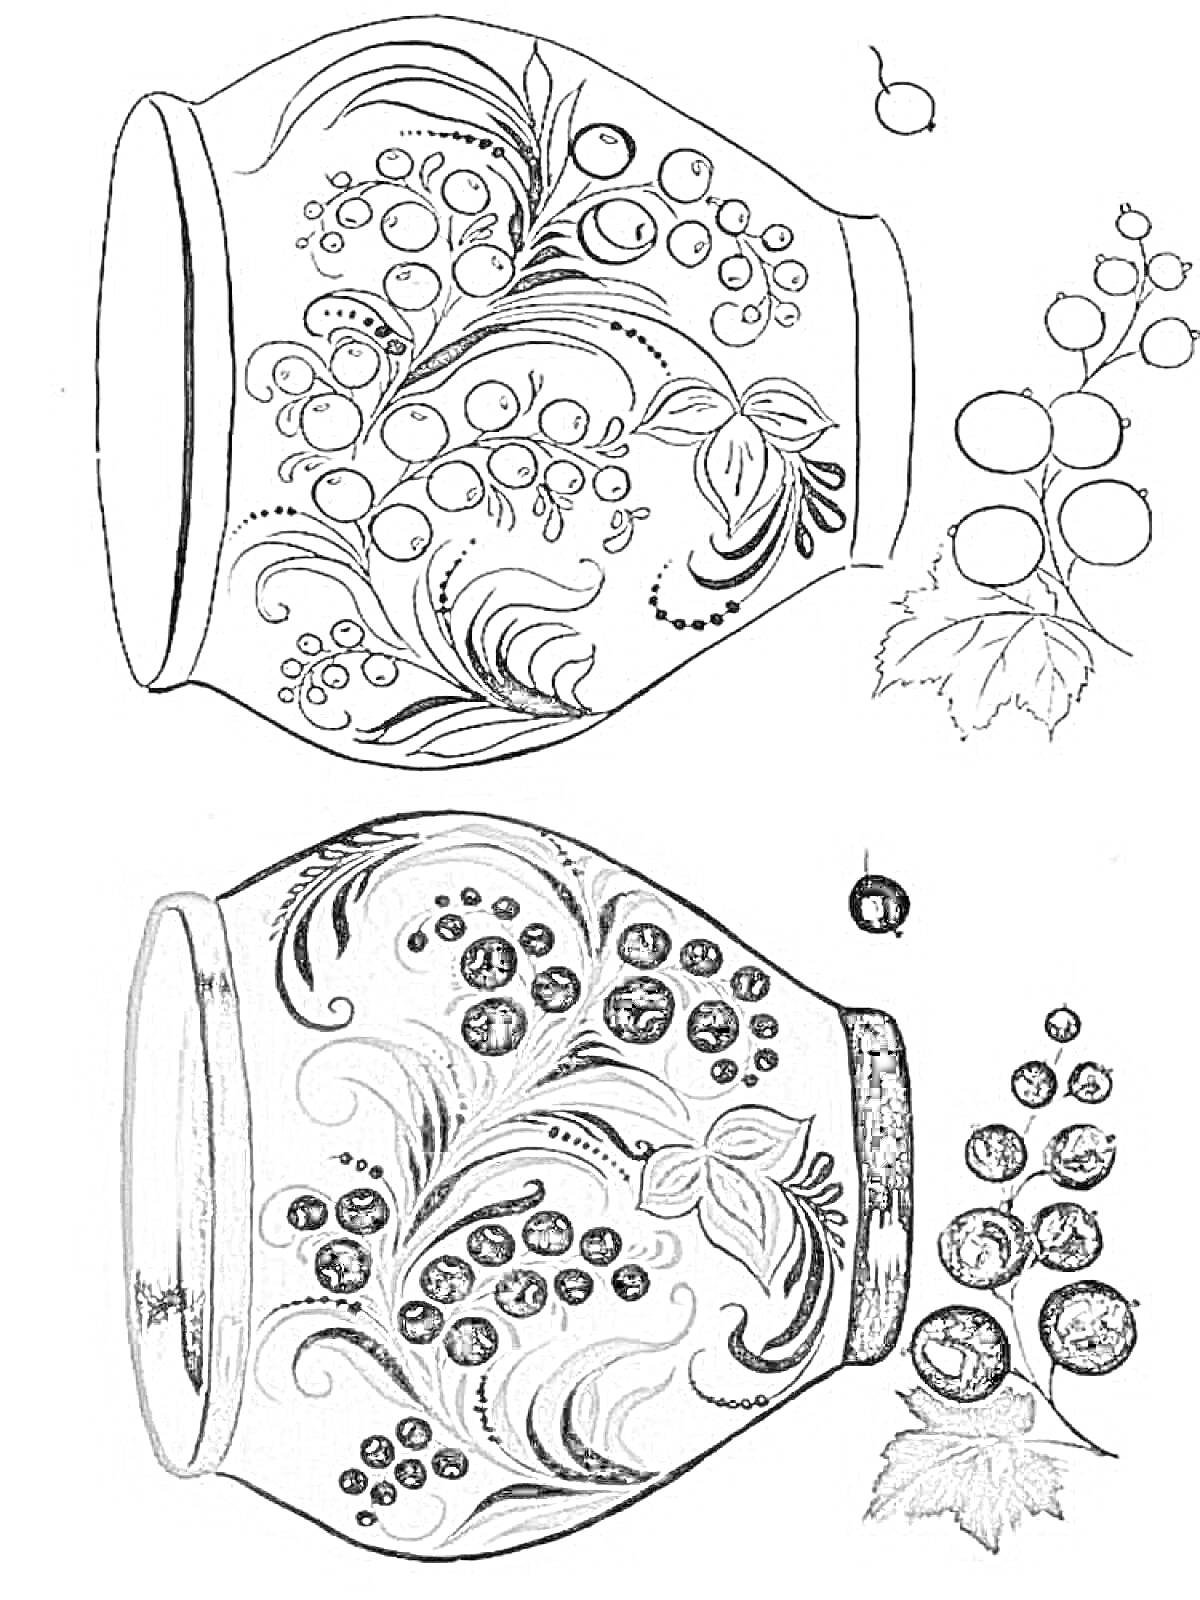 Раскраска Ваза с хохломской росписью, ягоды рябины, листья, узоры